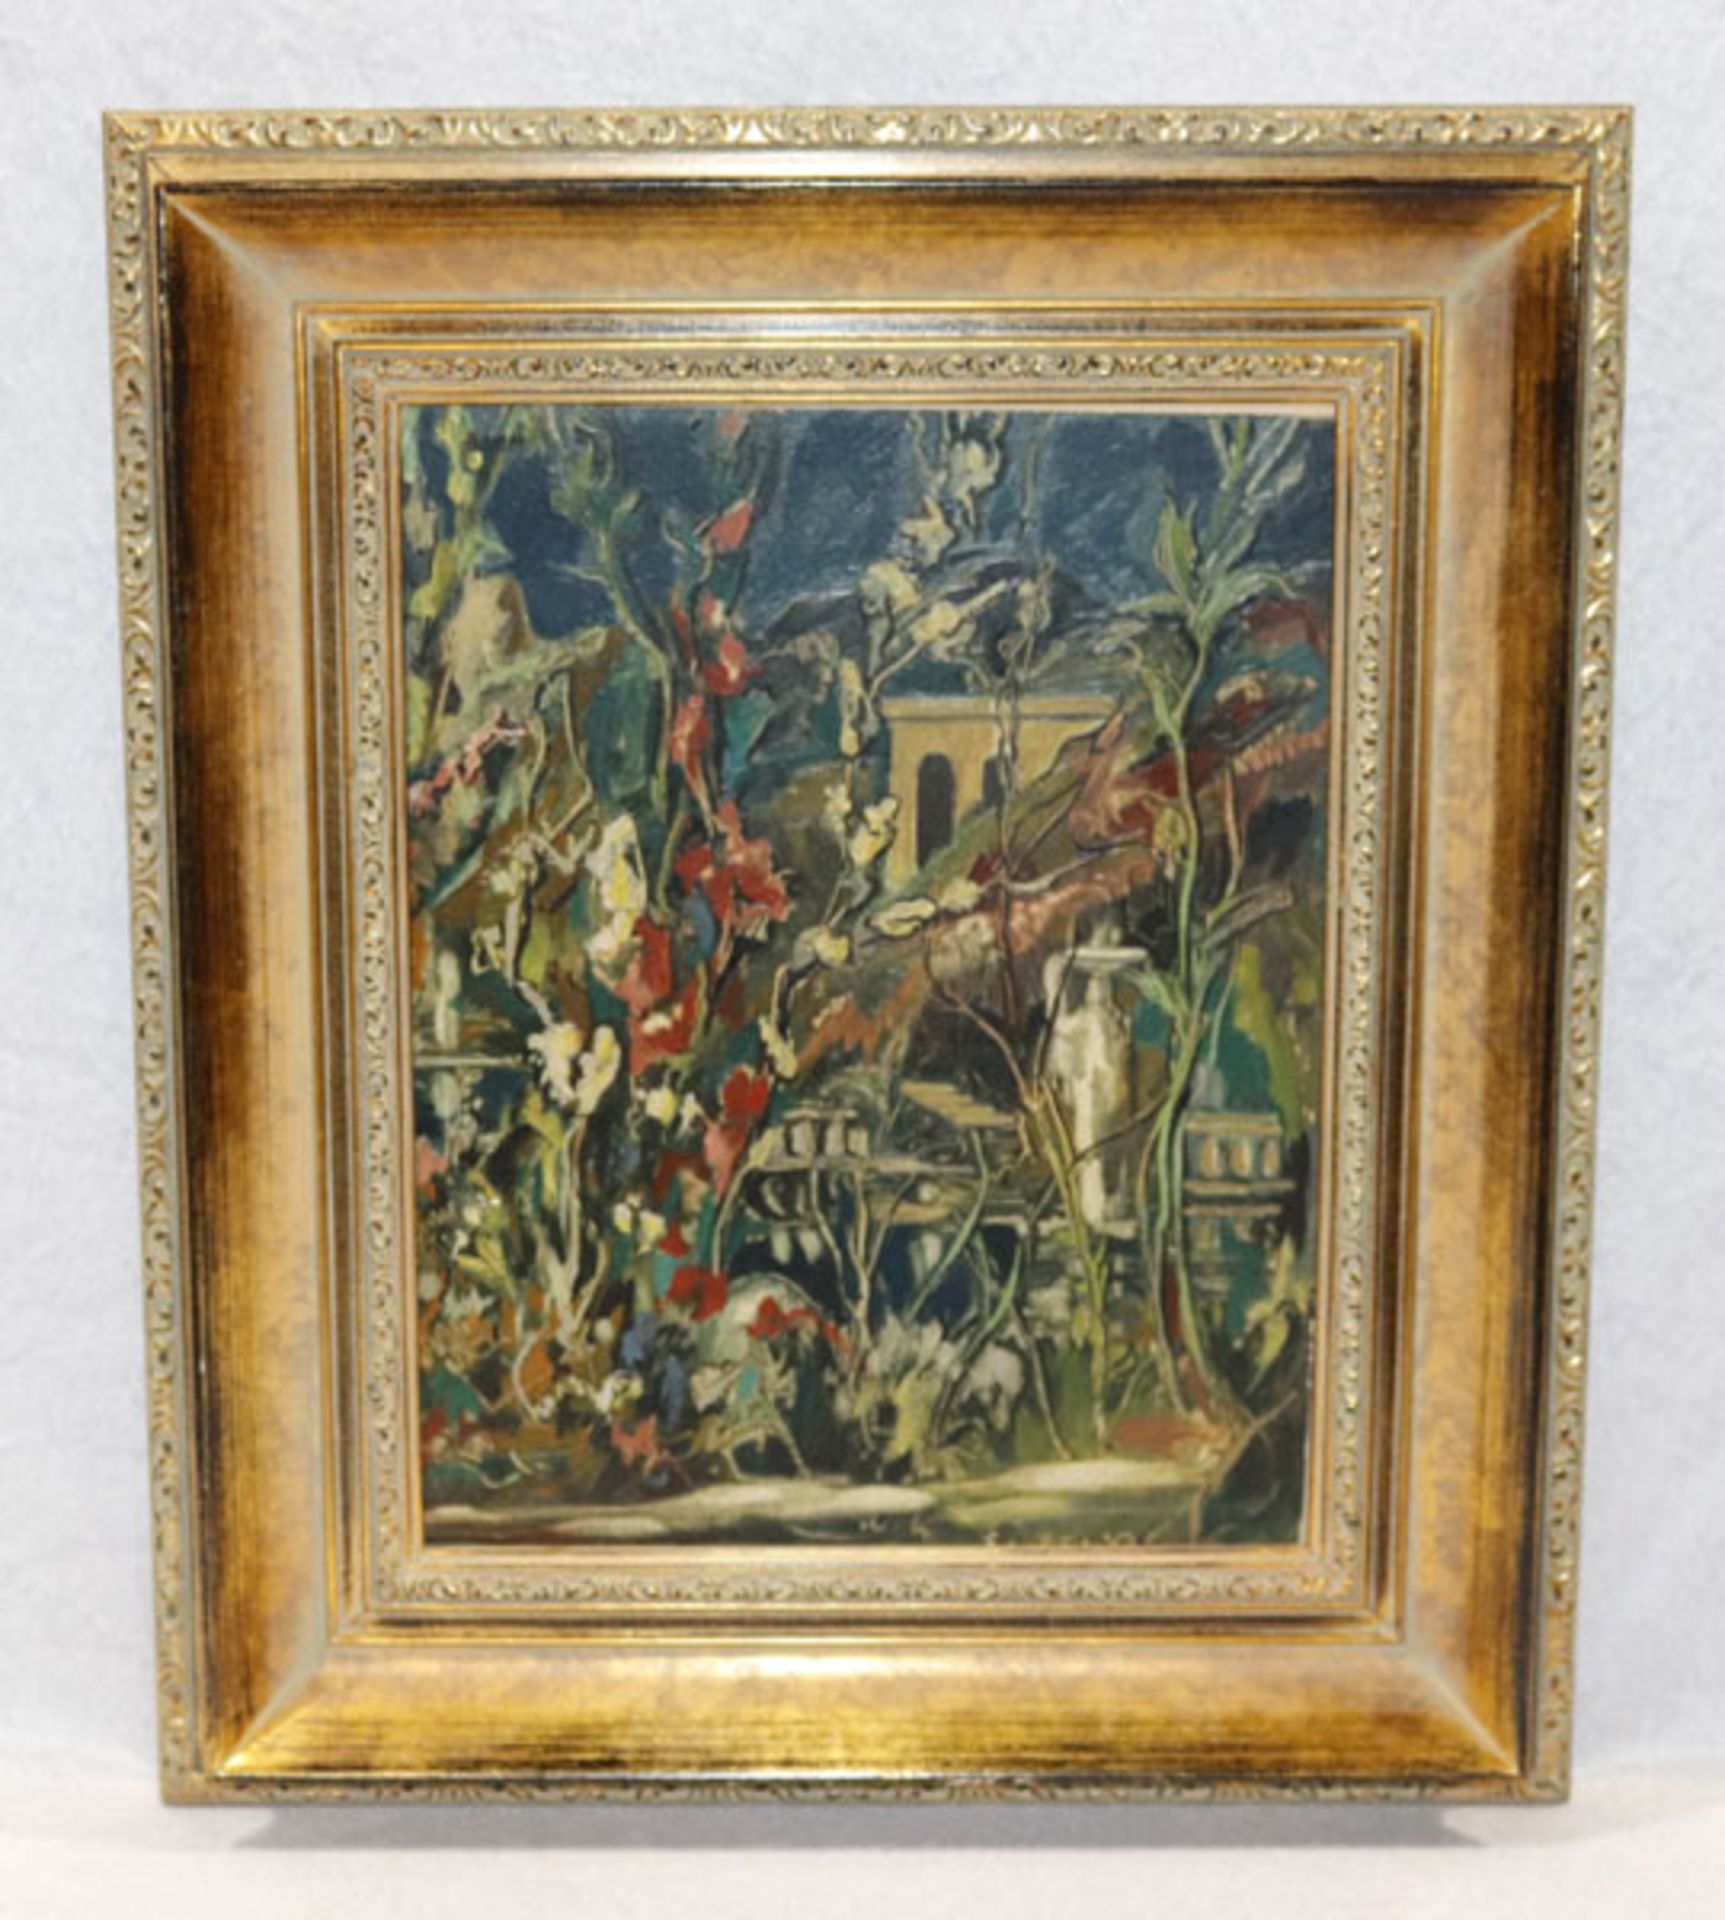 Gemälde ÖL/Malkaron 'Landschafts-Szenerie mit Blumen', signiert Fustier, Georges-Albert, * 1892 Genf